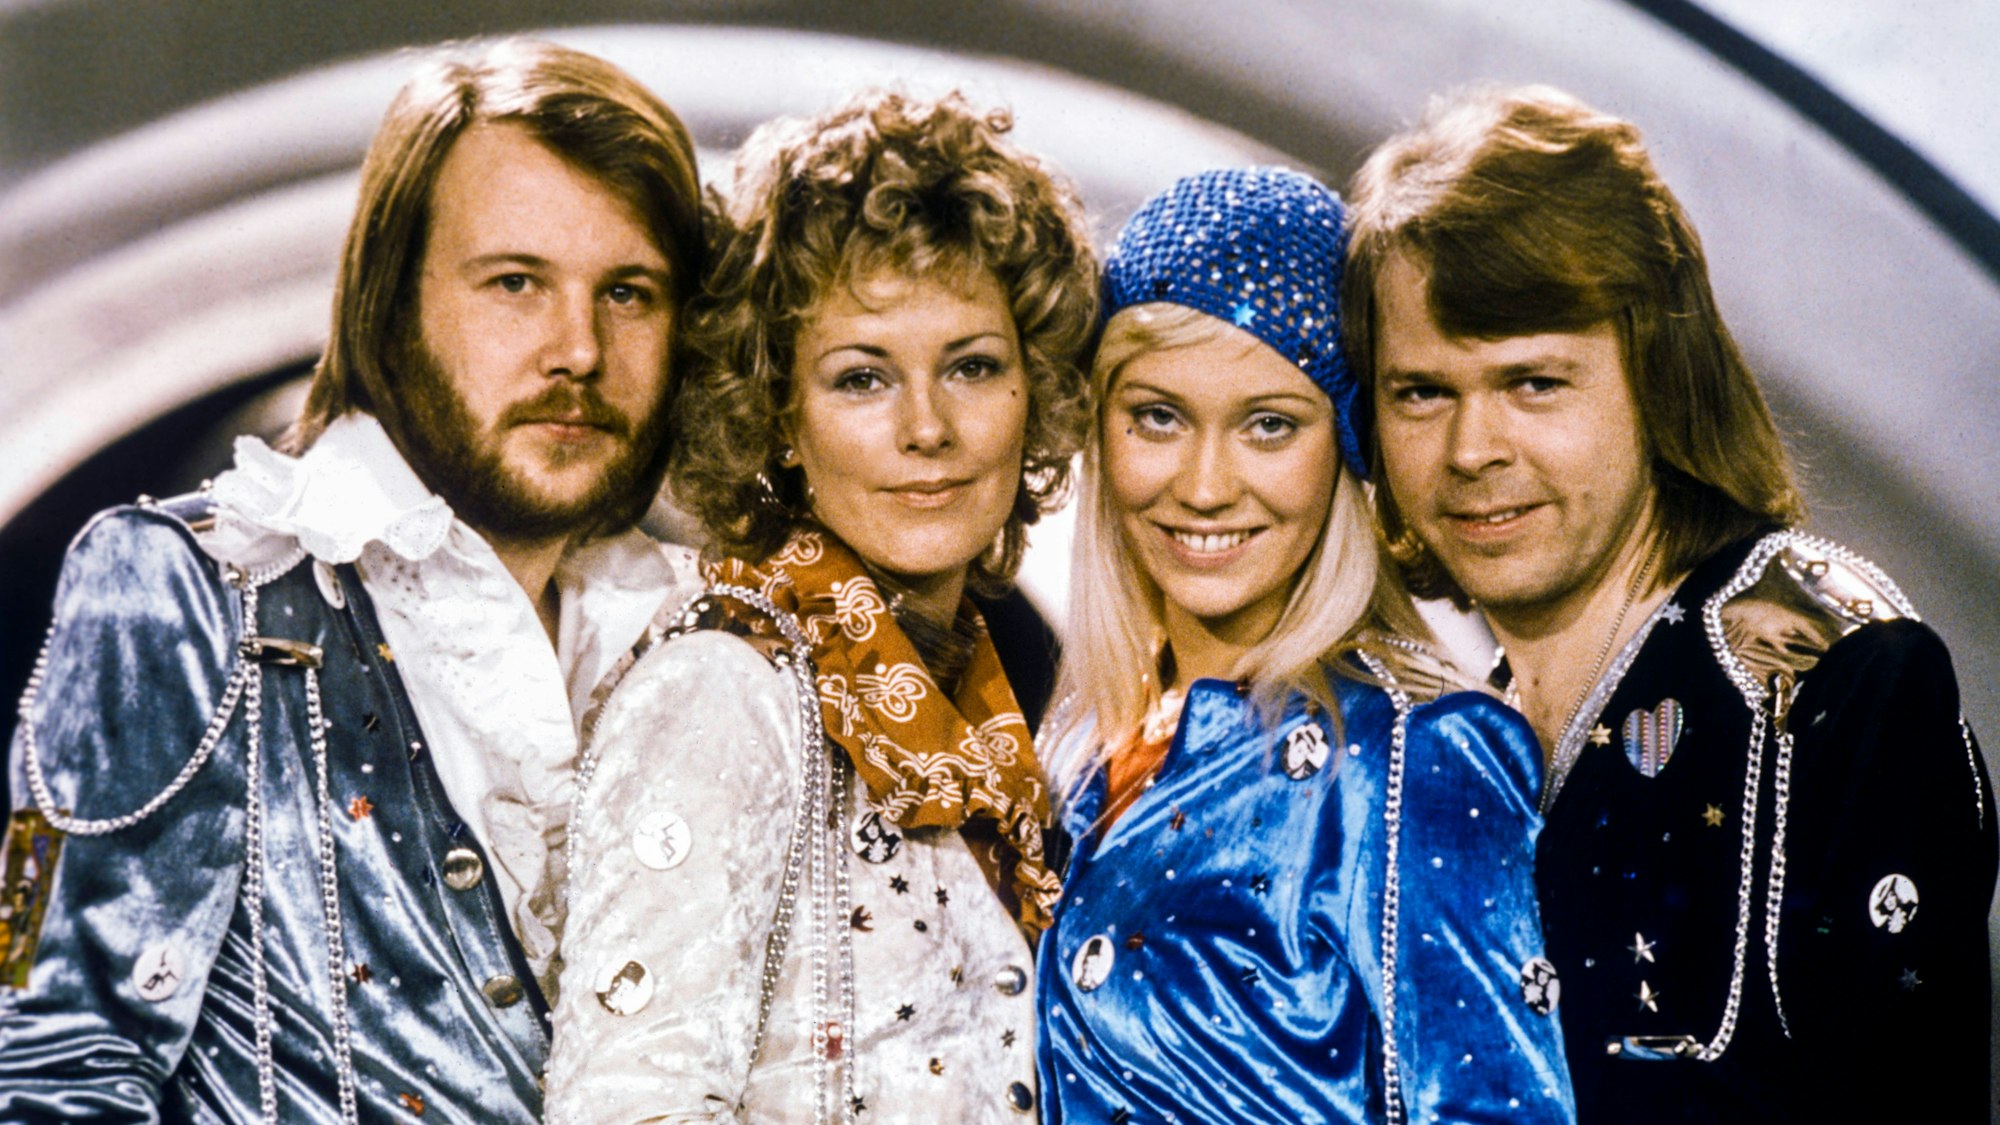 ABBA im Februar 1974, nachdem sie den schwedischen Vorentscheid, das Melodifestivalen, gewonnen hatten.